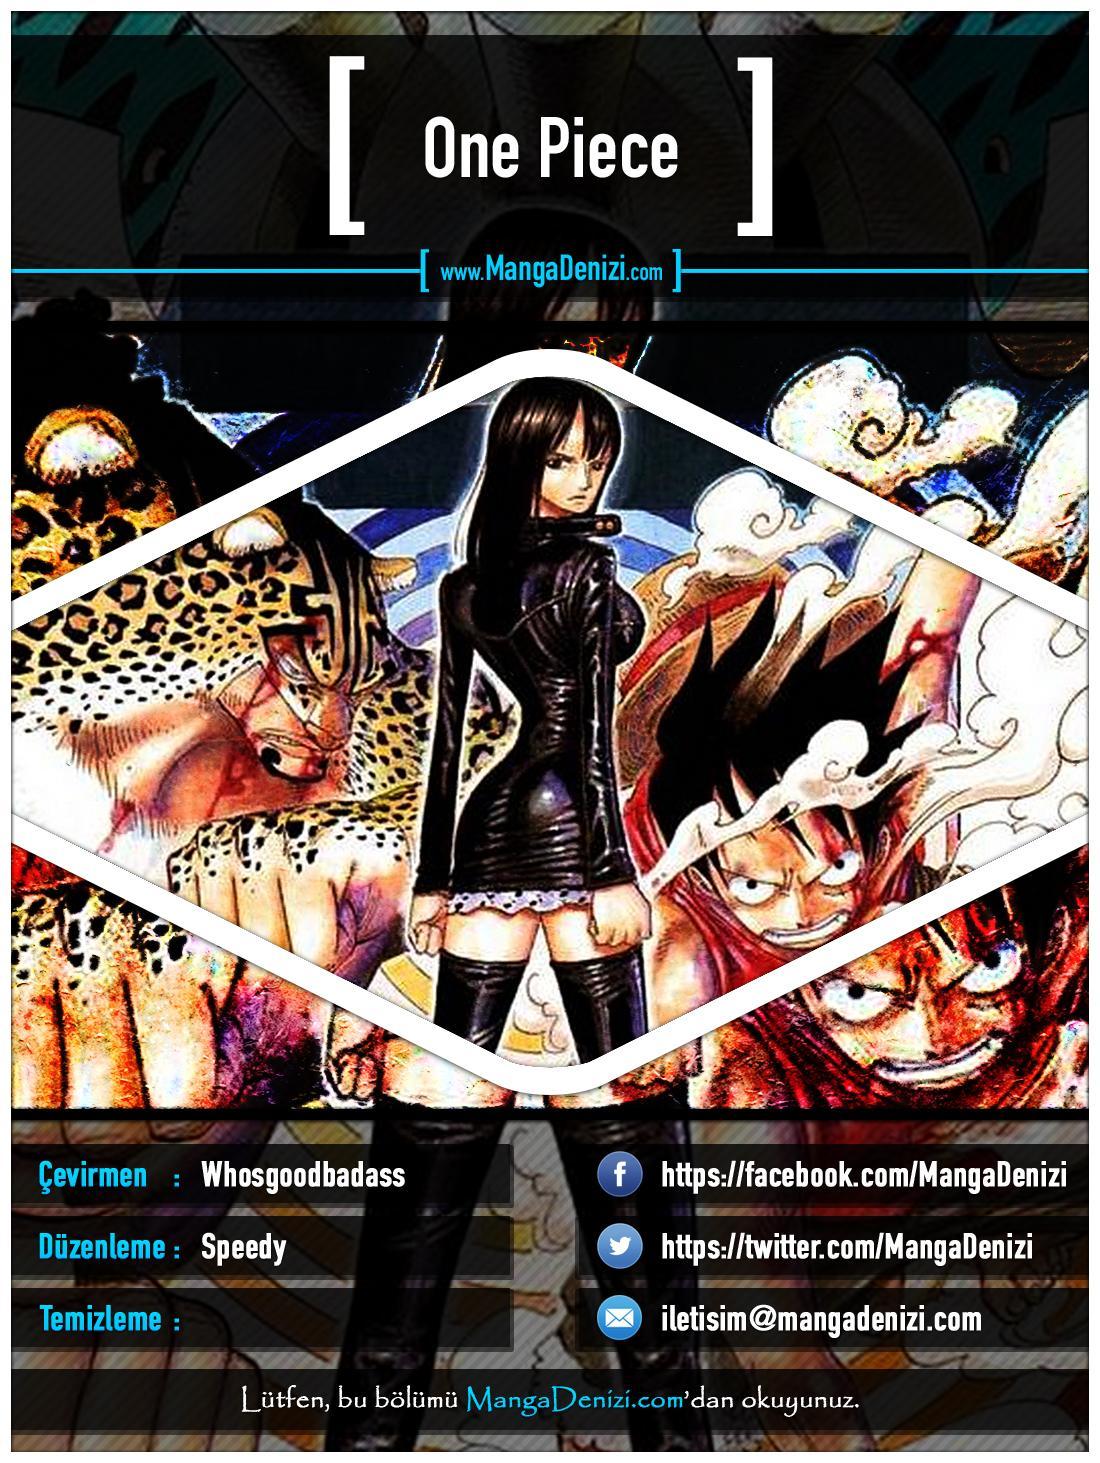 One Piece [Renkli] mangasının 0357 bölümünün 1. sayfasını okuyorsunuz.